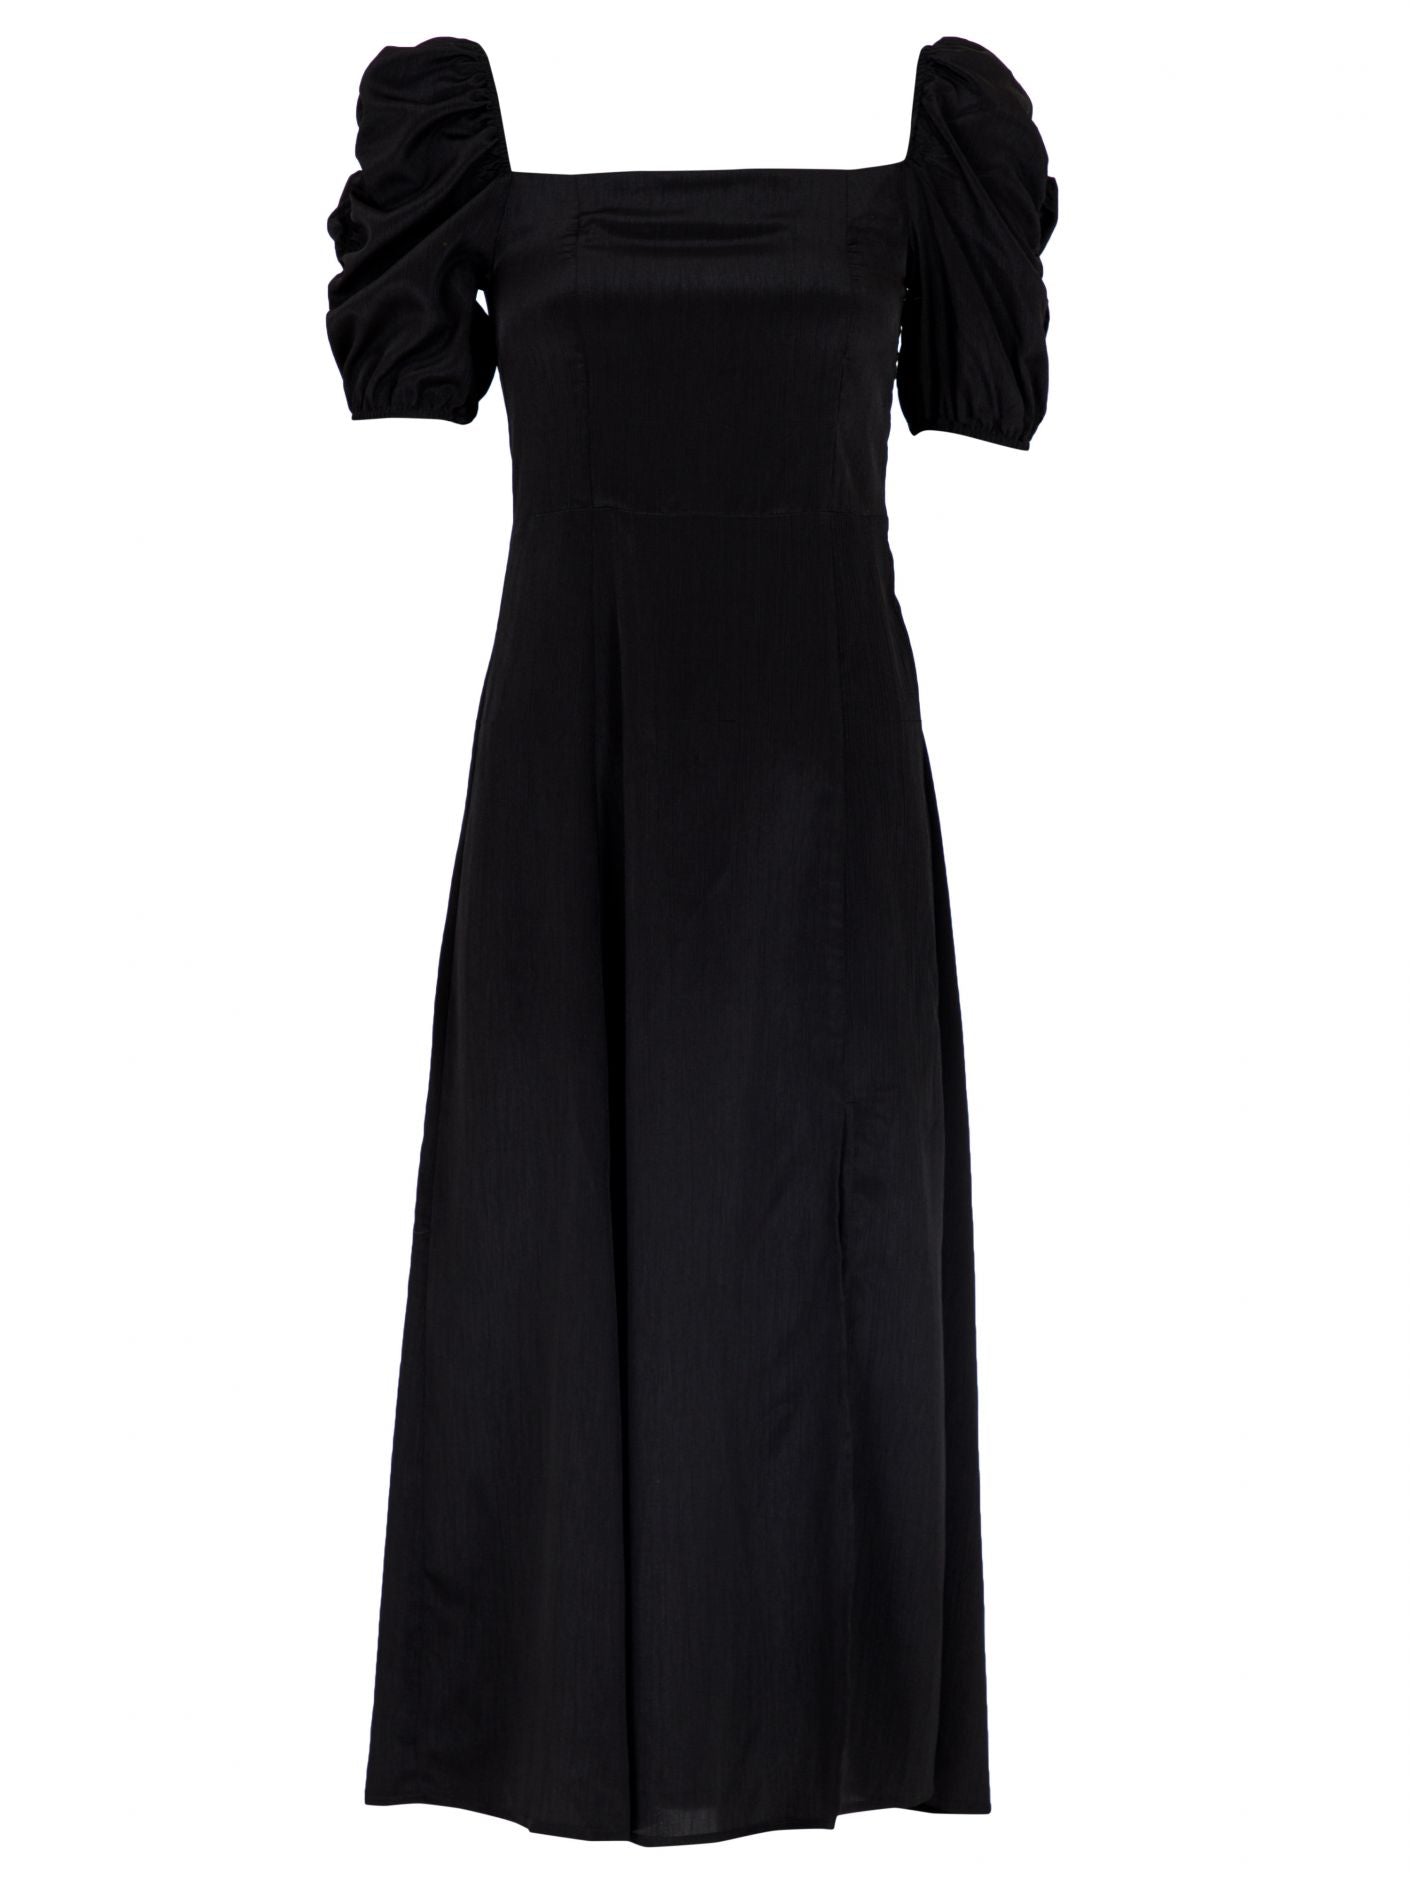 Camma Solid Dress - Black - Neo Noir - Kjoler - VILLOID.no